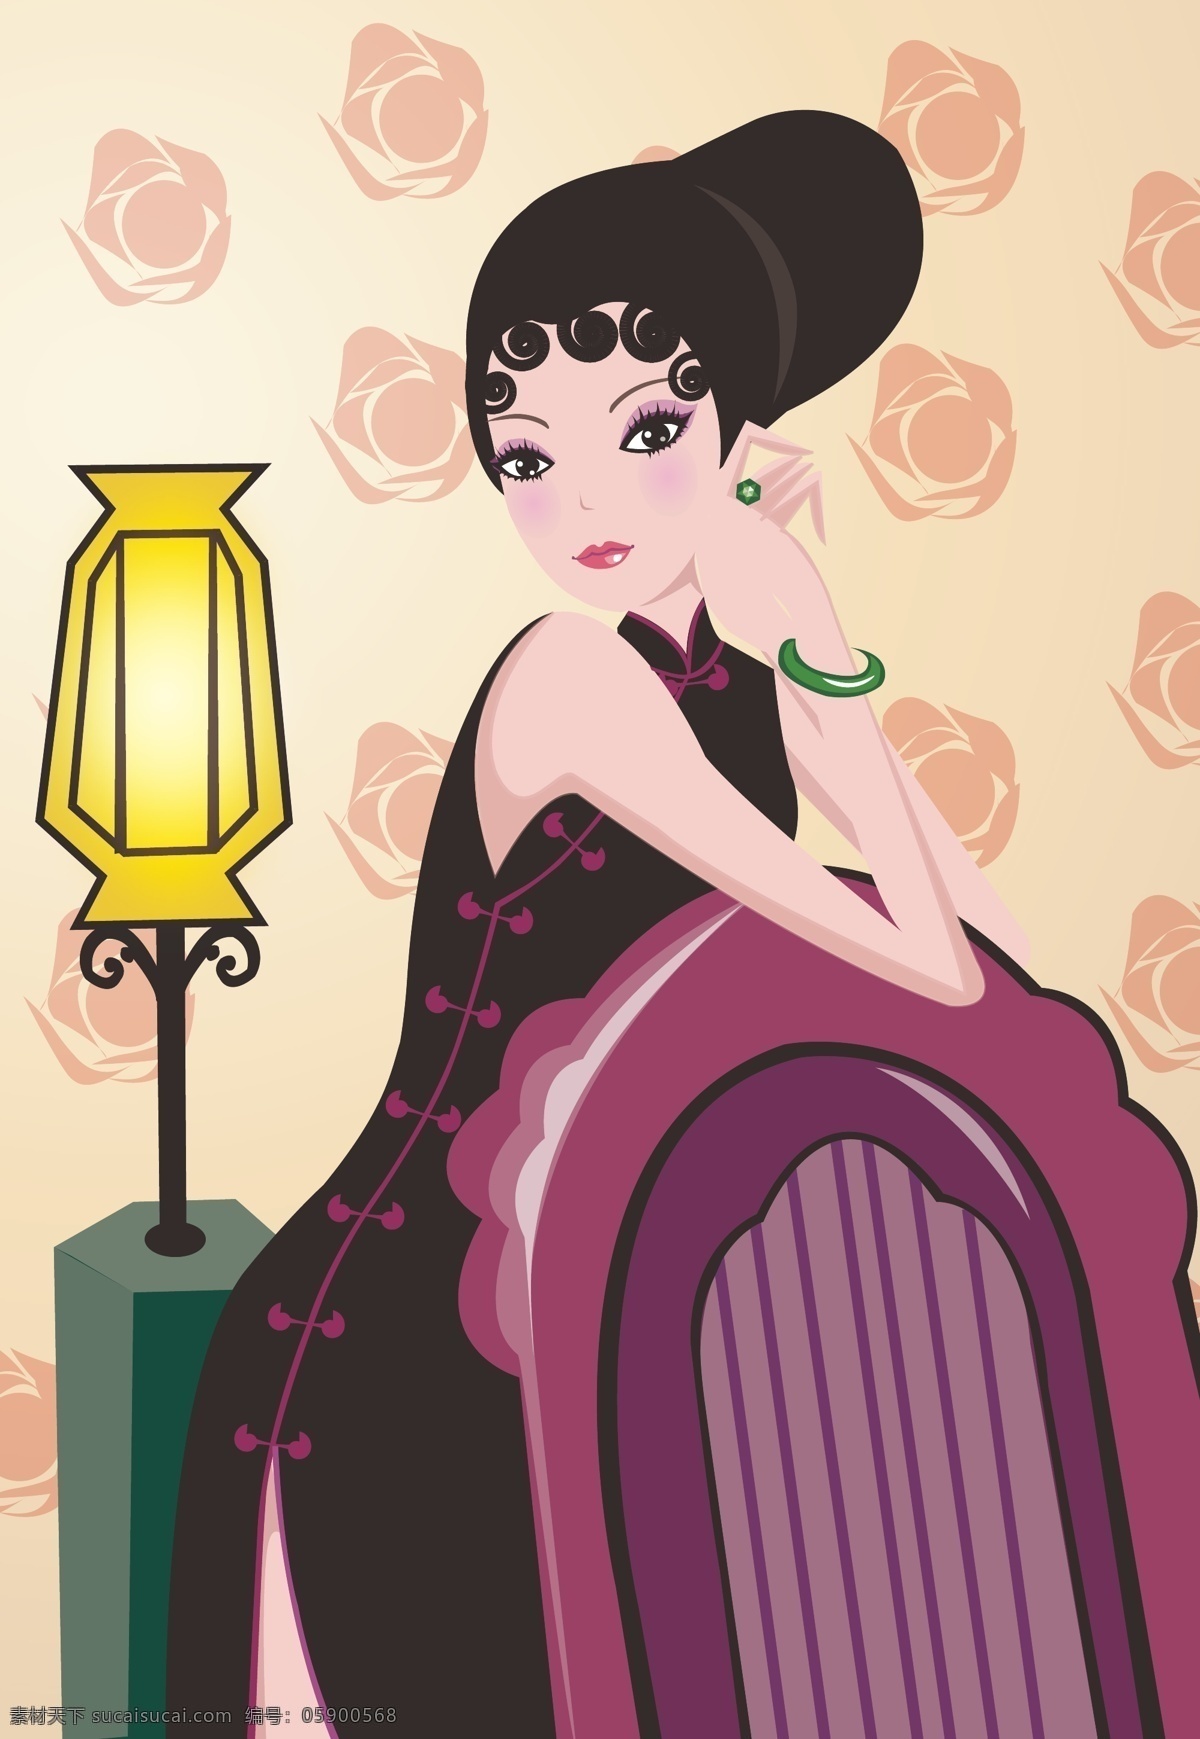 中国风 旗袍美女 古典 发髻 翡翠 手镯 妇女女性 矢量人物